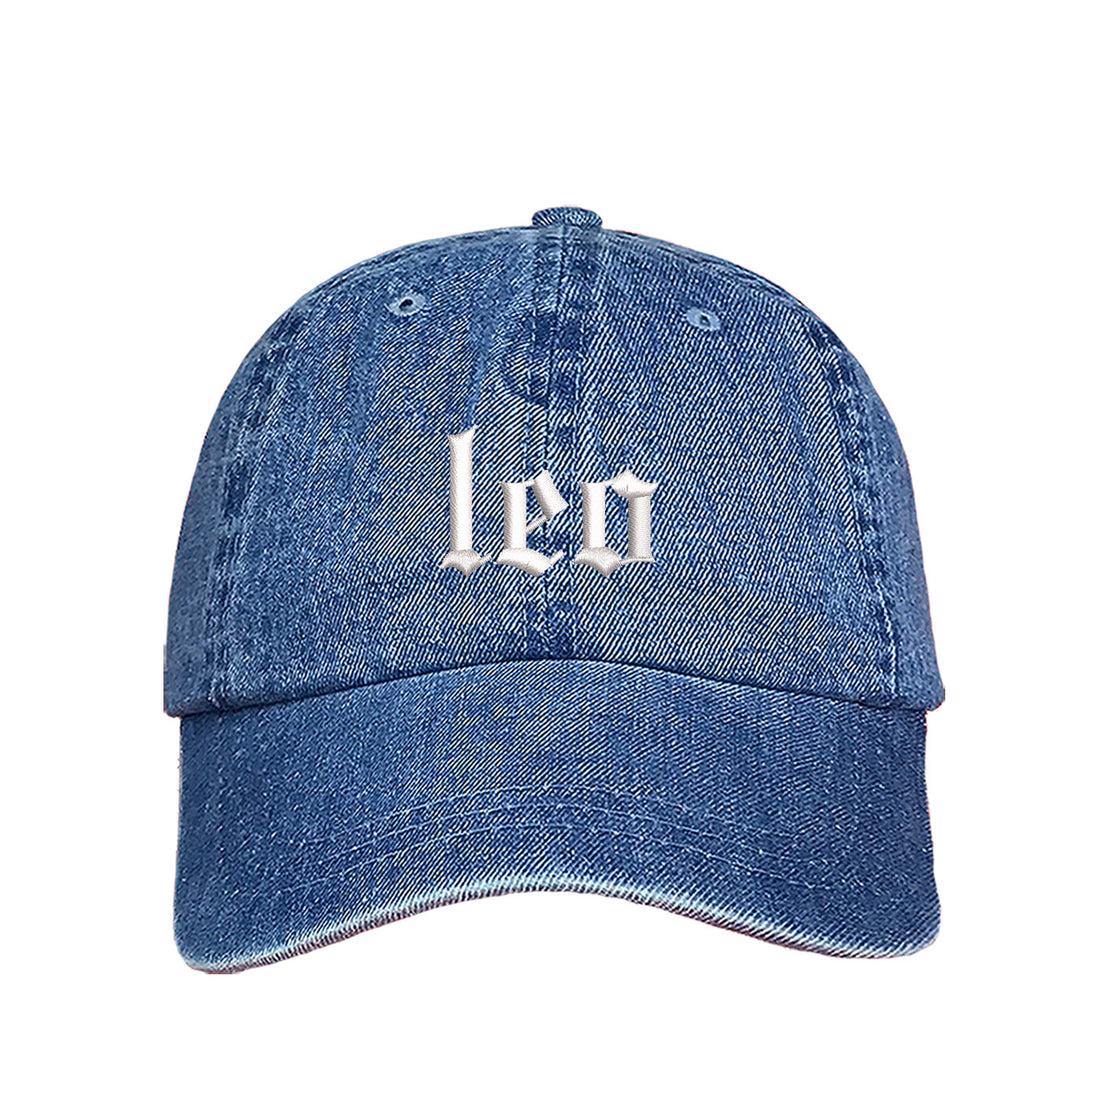 Leo Old English Writing Baseball Hat